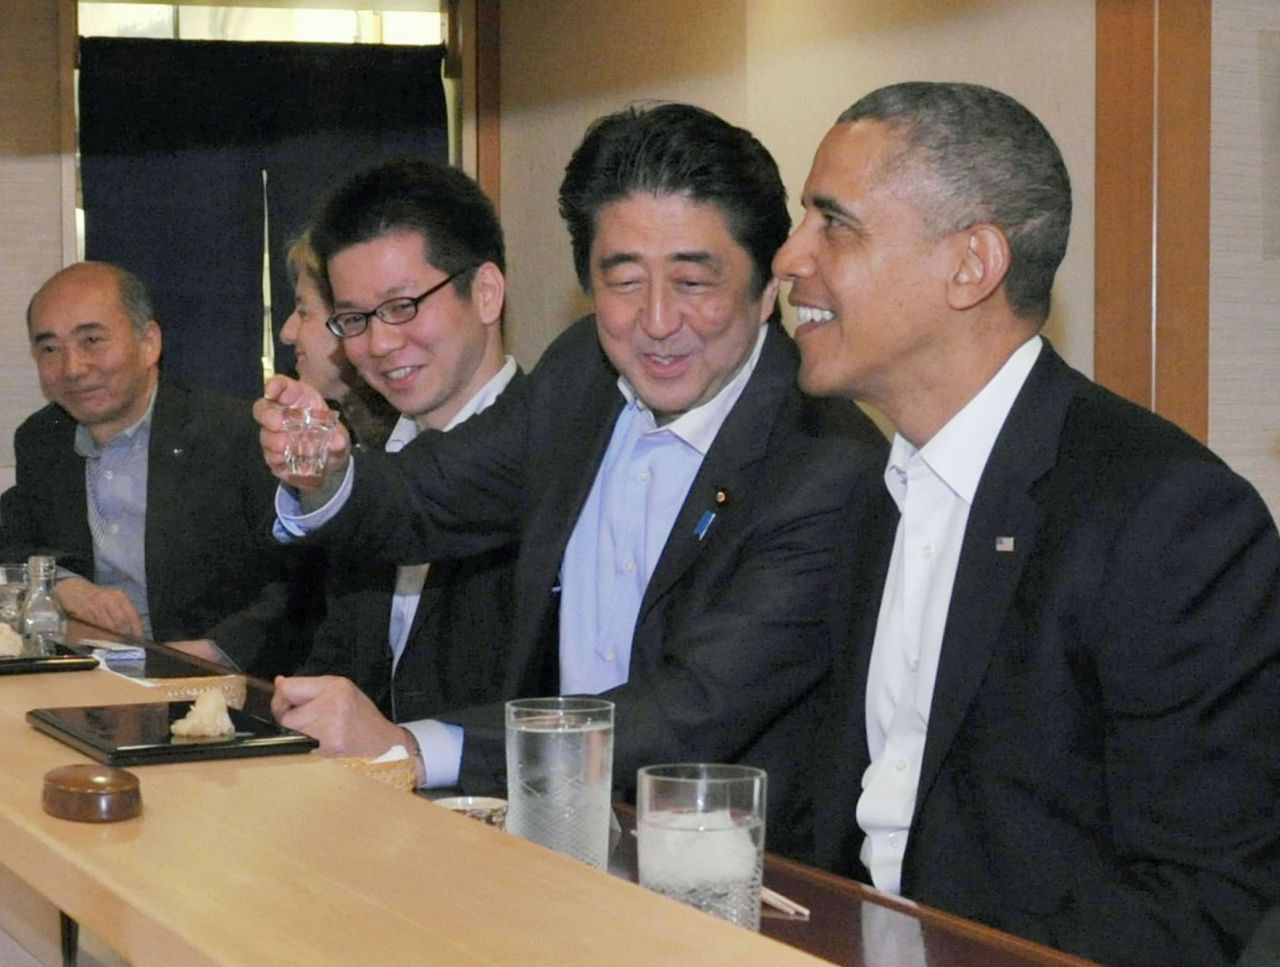 Obama and Abe dine at the Sukiyabashi Jiro sushi restaurant.